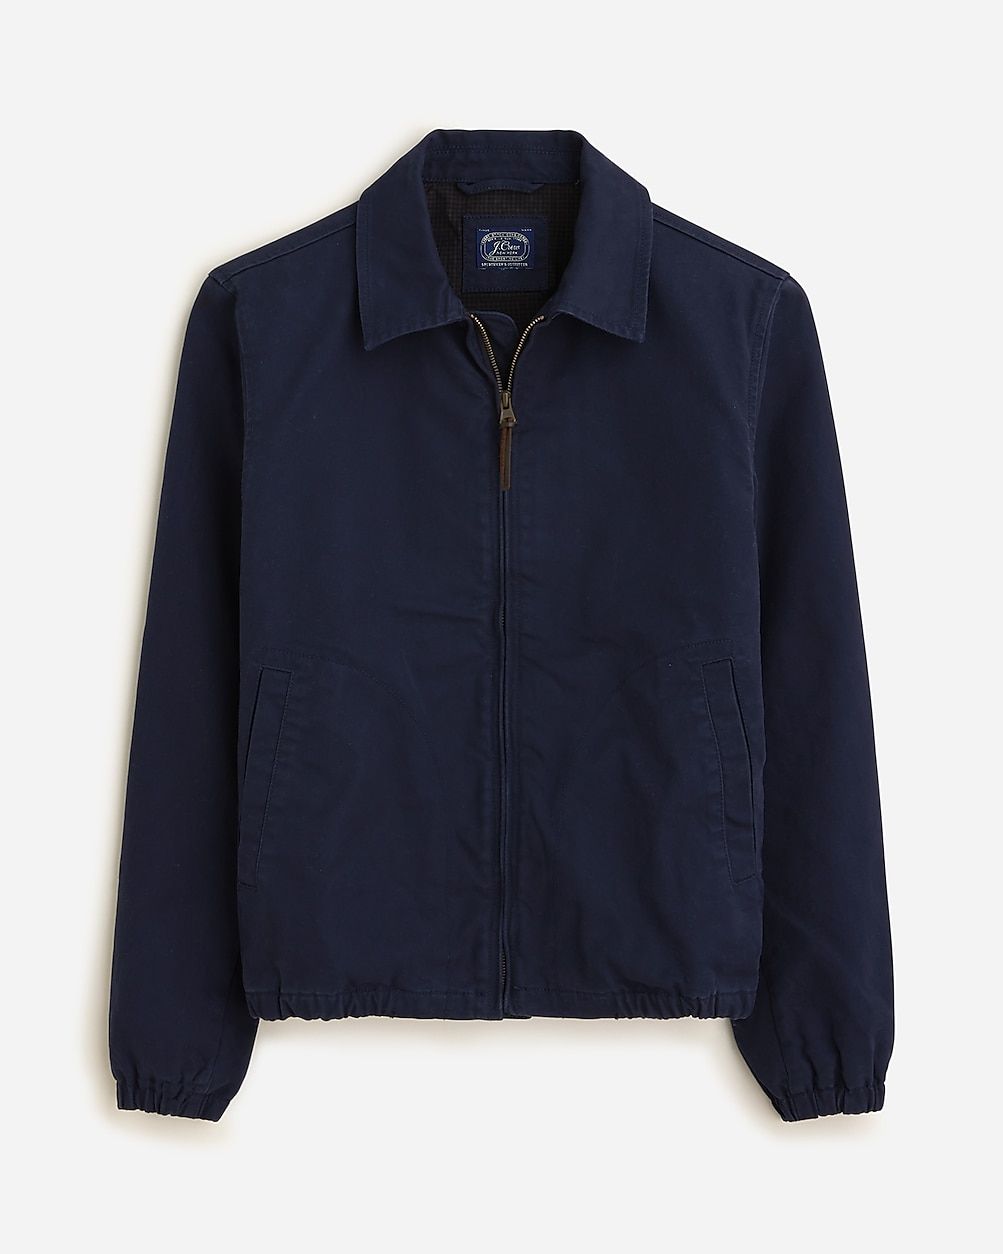 Harrington jacket in cotton twill | J.Crew US